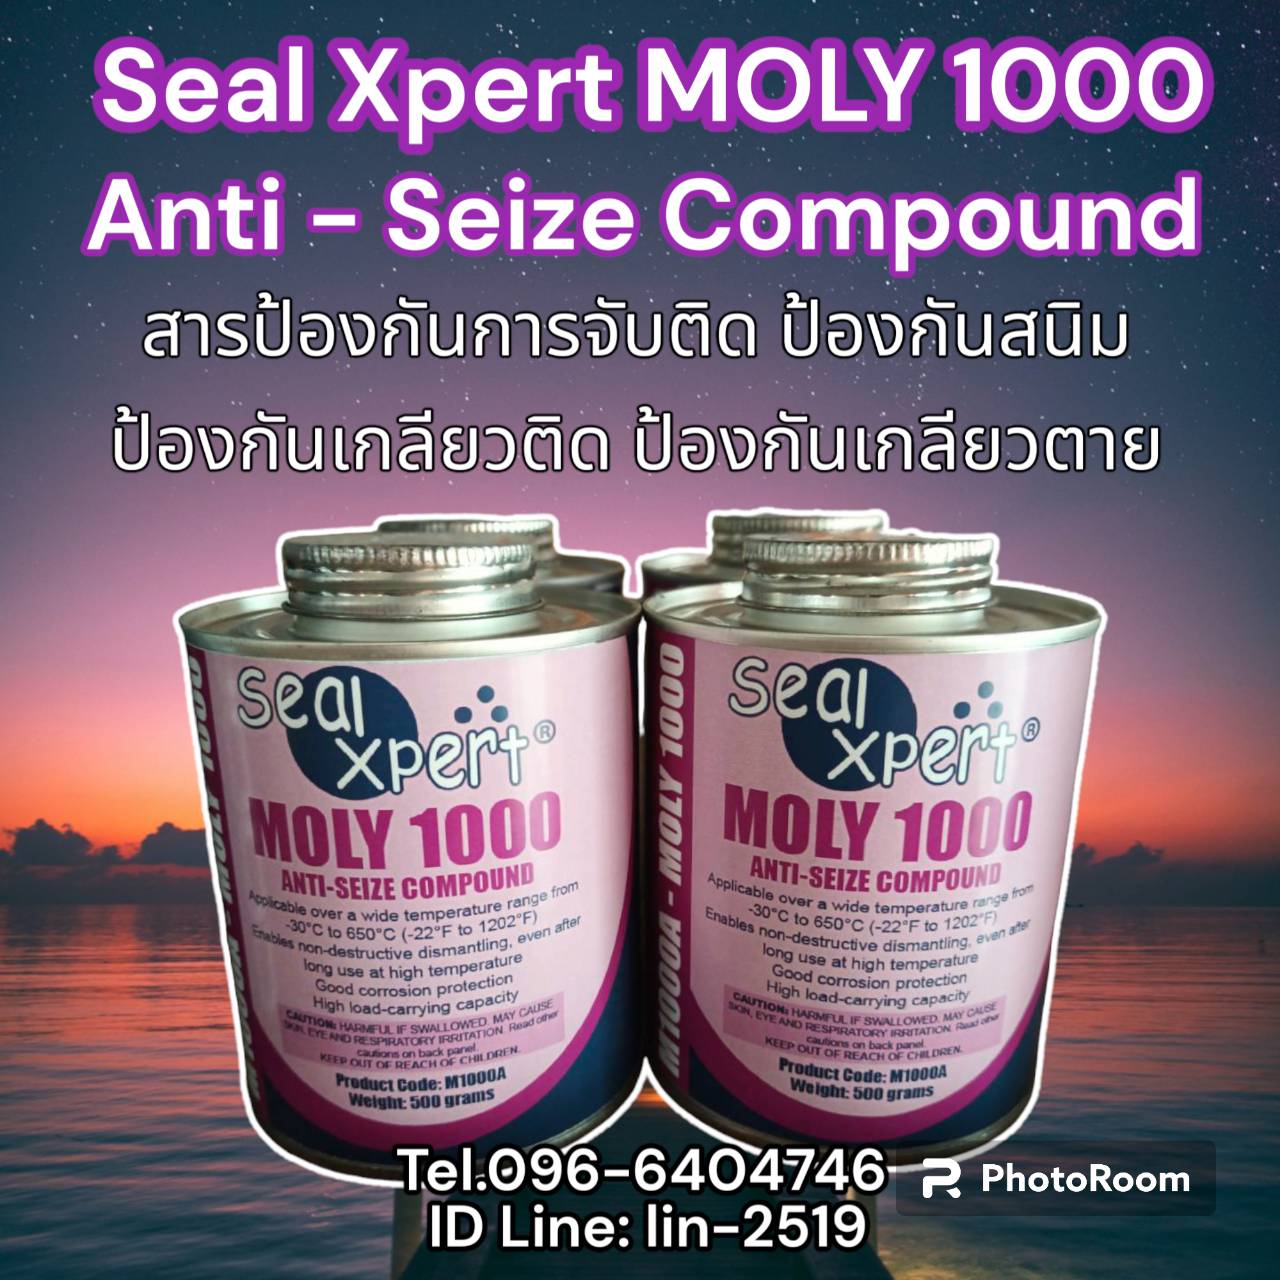 รูปภาพ สารทาเกลียวป้องกันการจับติดเอนกประสงค์ Seal Xpert Moly 1000 Anti-Seize Compound ทาเกลียวกันสนิม ป้องกันเกลียวติด ป้องกันเกลียวตาย